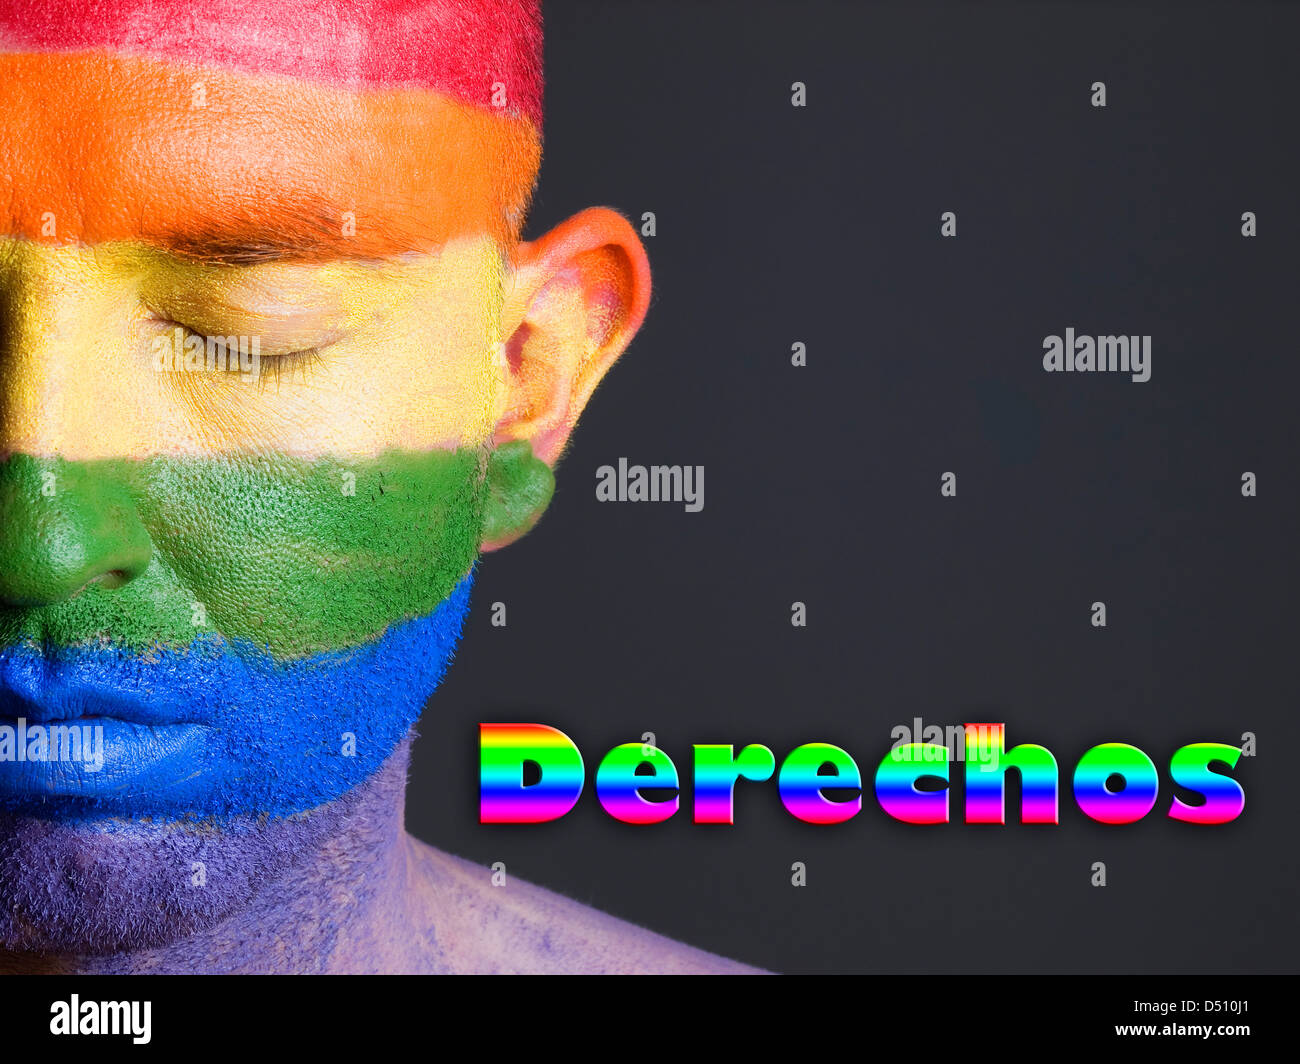 Hombre con la bandera gay pintada en la cara y con los ojos cerrados. La palabra 'derechos' esta escrita en un lado. Stock Photo